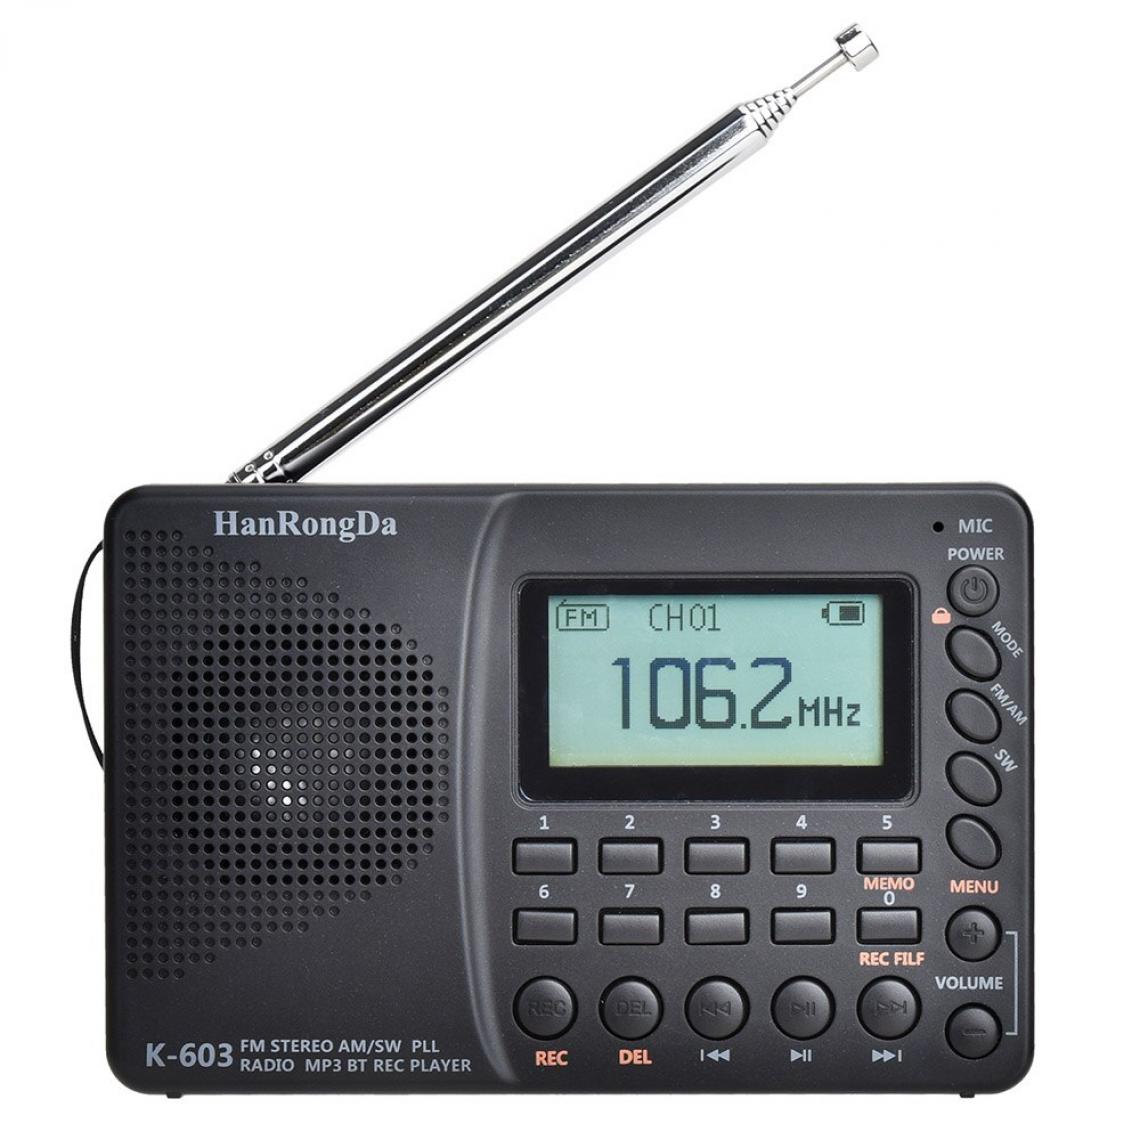 Universal - Radio portable professionnelle mini HRD 603 AM/FM/SW/BT/TF radio de poche USB MP3 magnétoscope numérique Bluetooth bon récepteur sonore(Le noir) - Radio